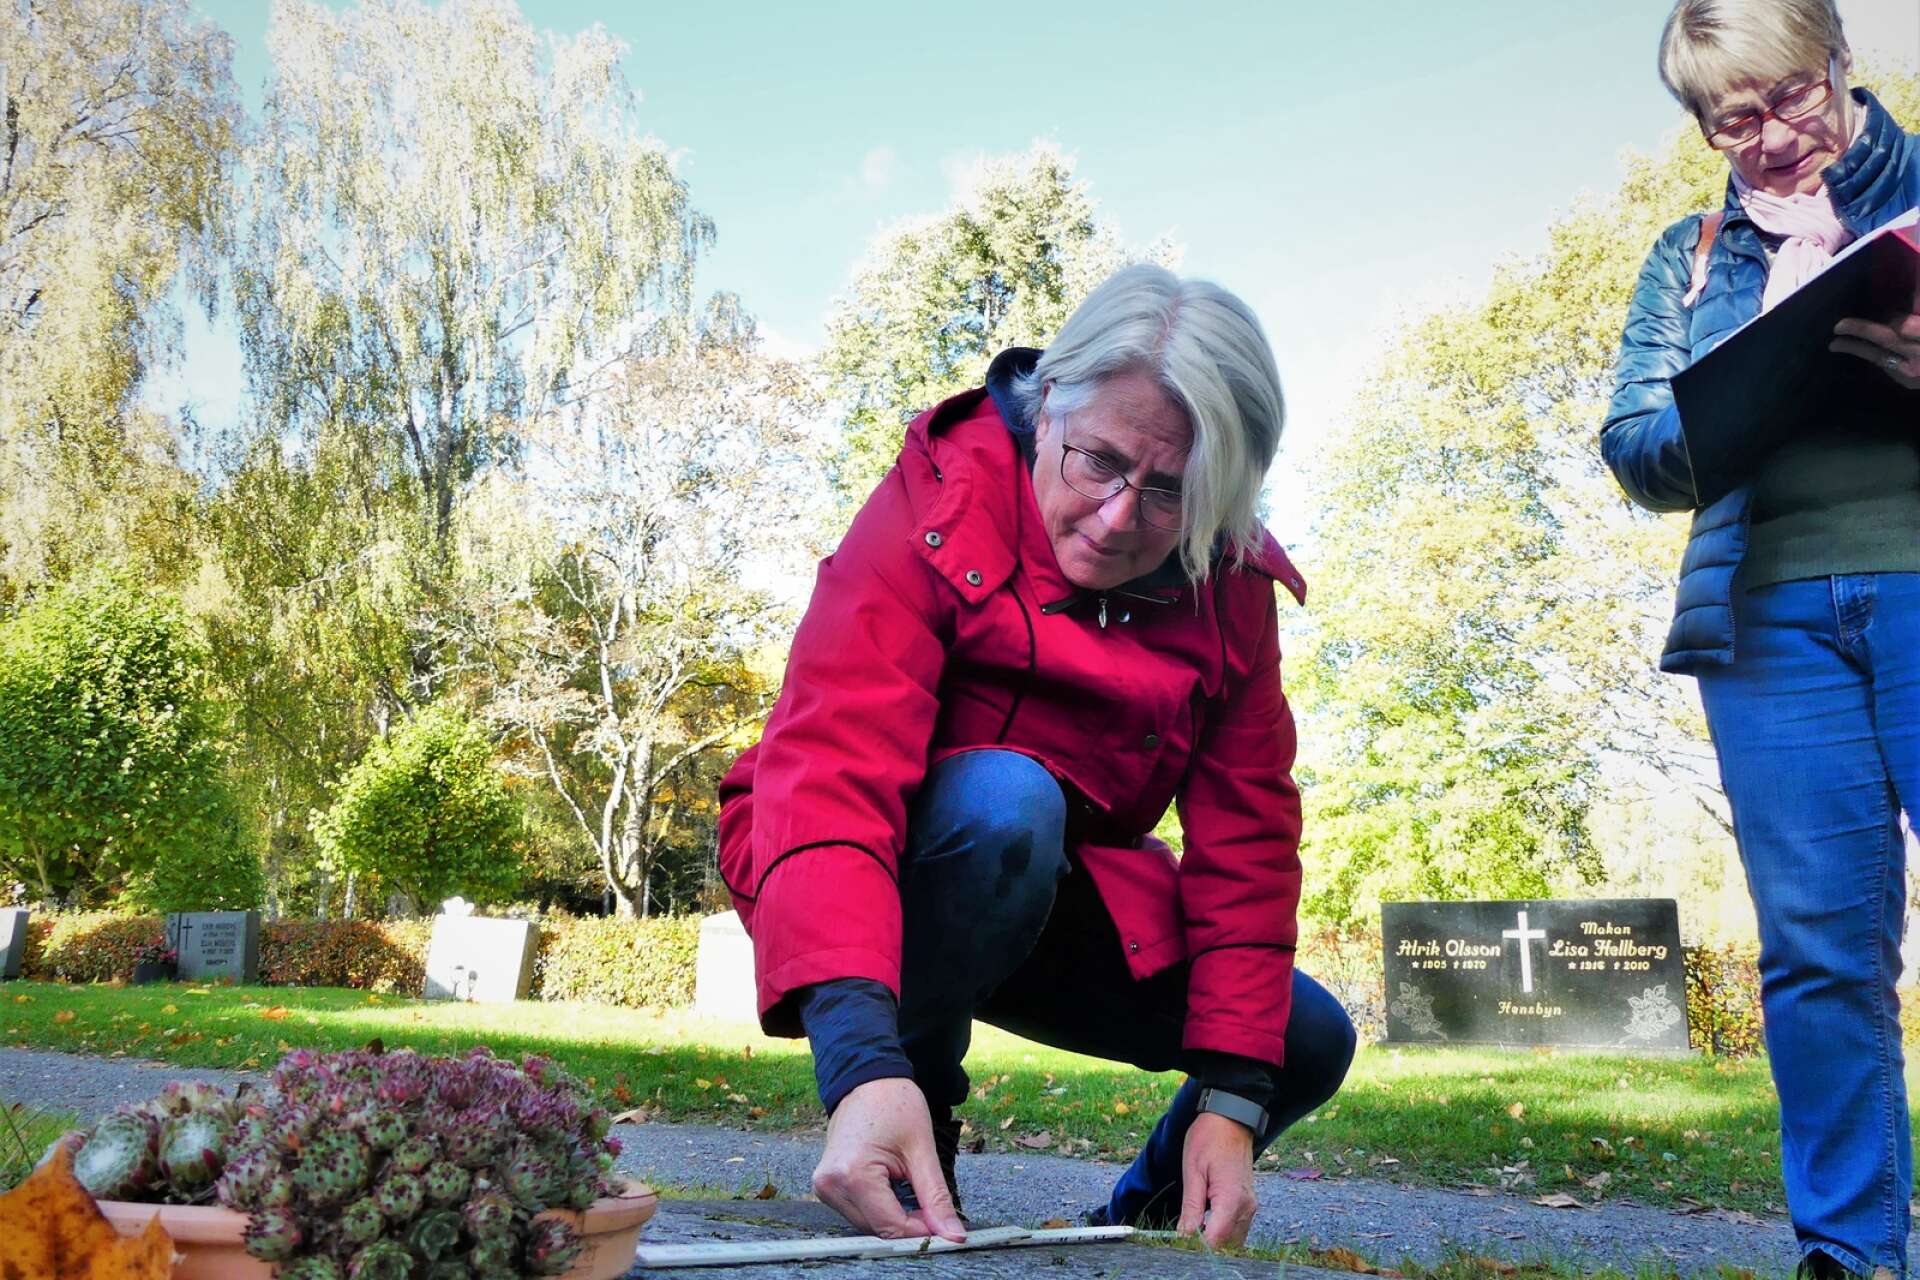 En stor gravinventering har påbörjats där alla gravar ska mätas och dokumenteras. Gunilla Bivall och Ann-Charlotte Wahlström, som är två av de frivilliga som hjälper till i arbetet, tycker det intressant att gå runt och läsa på stenarna. Många gamla minnen väcks till liv.